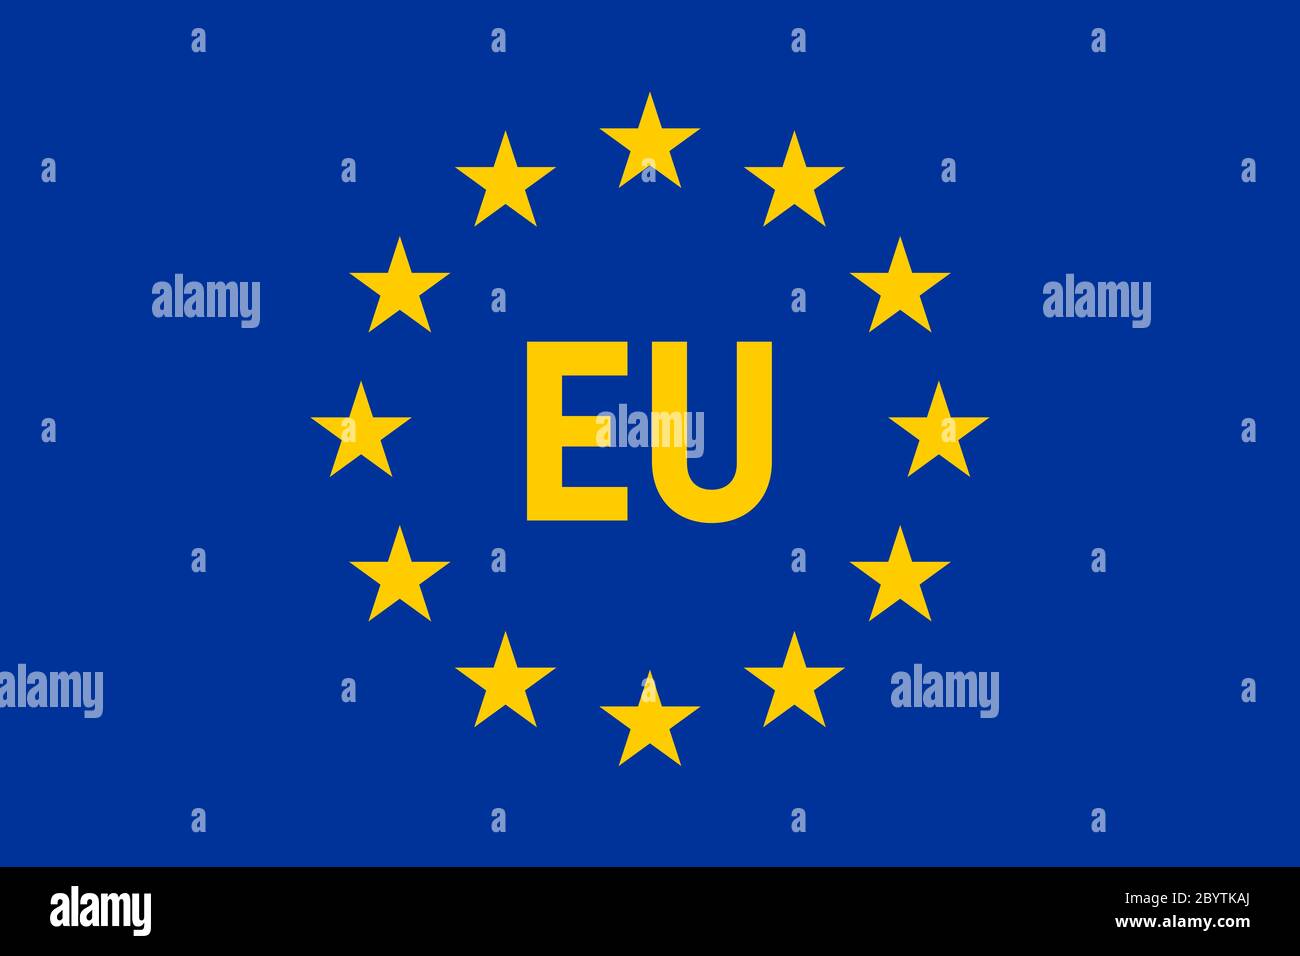 Drapeau de l'Union européenne. Douze étoiles jaunes sur fond bleu avec une étiquette eu au milieu. Illustration vectorielle. Illustration de Vecteur